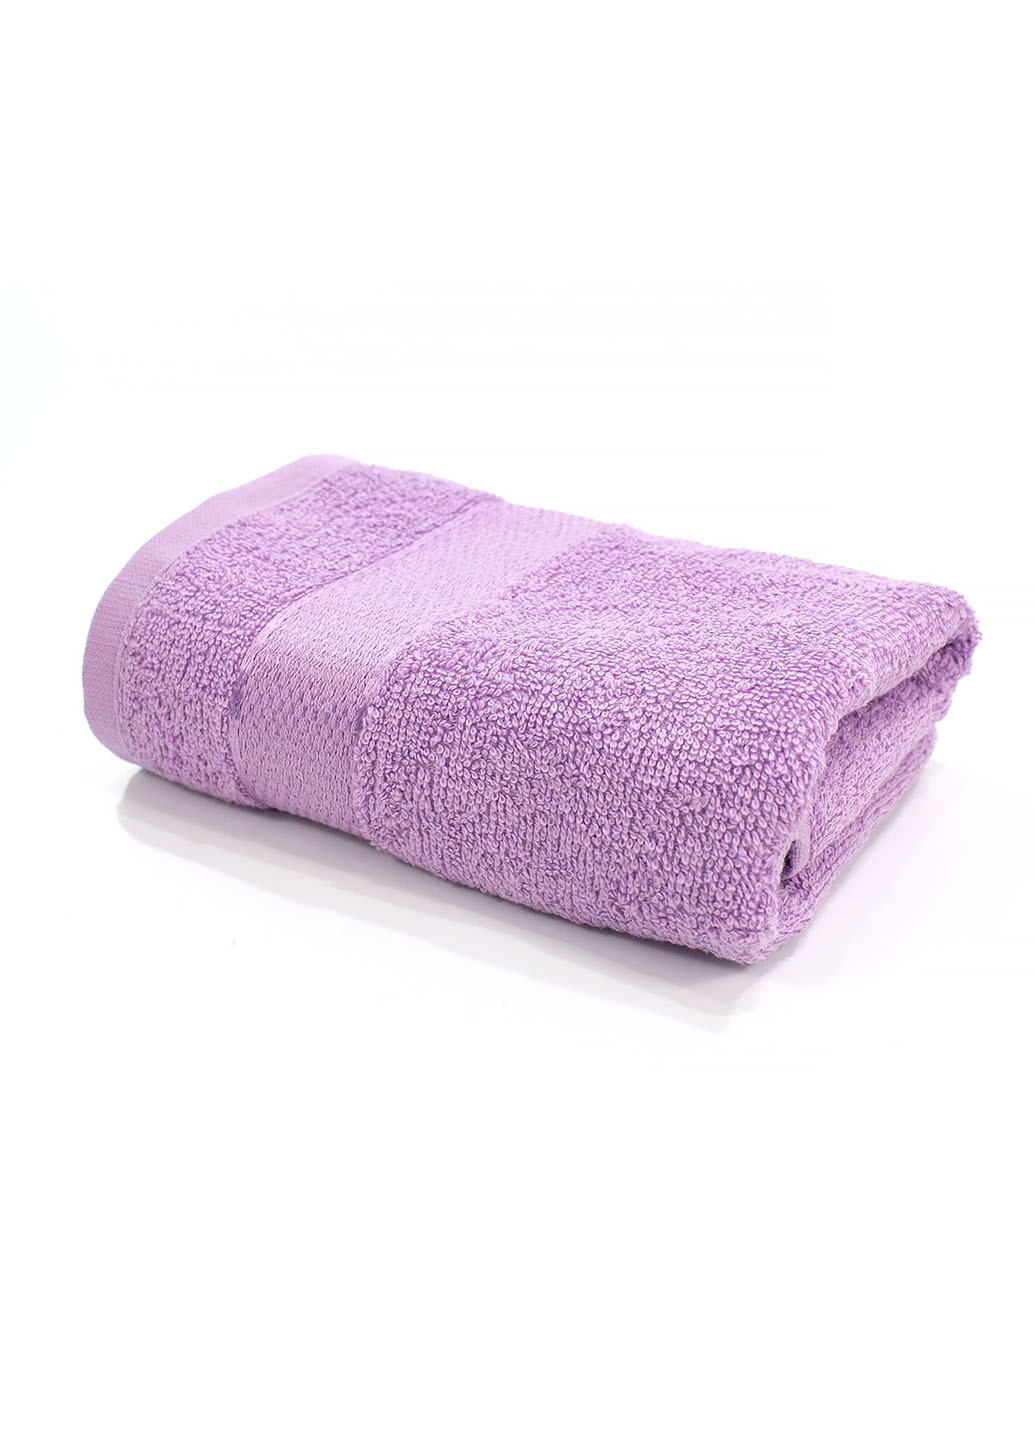 Еней-Плюс полотенце махровое бс0024 40х70 фиолетовый производство - Украина